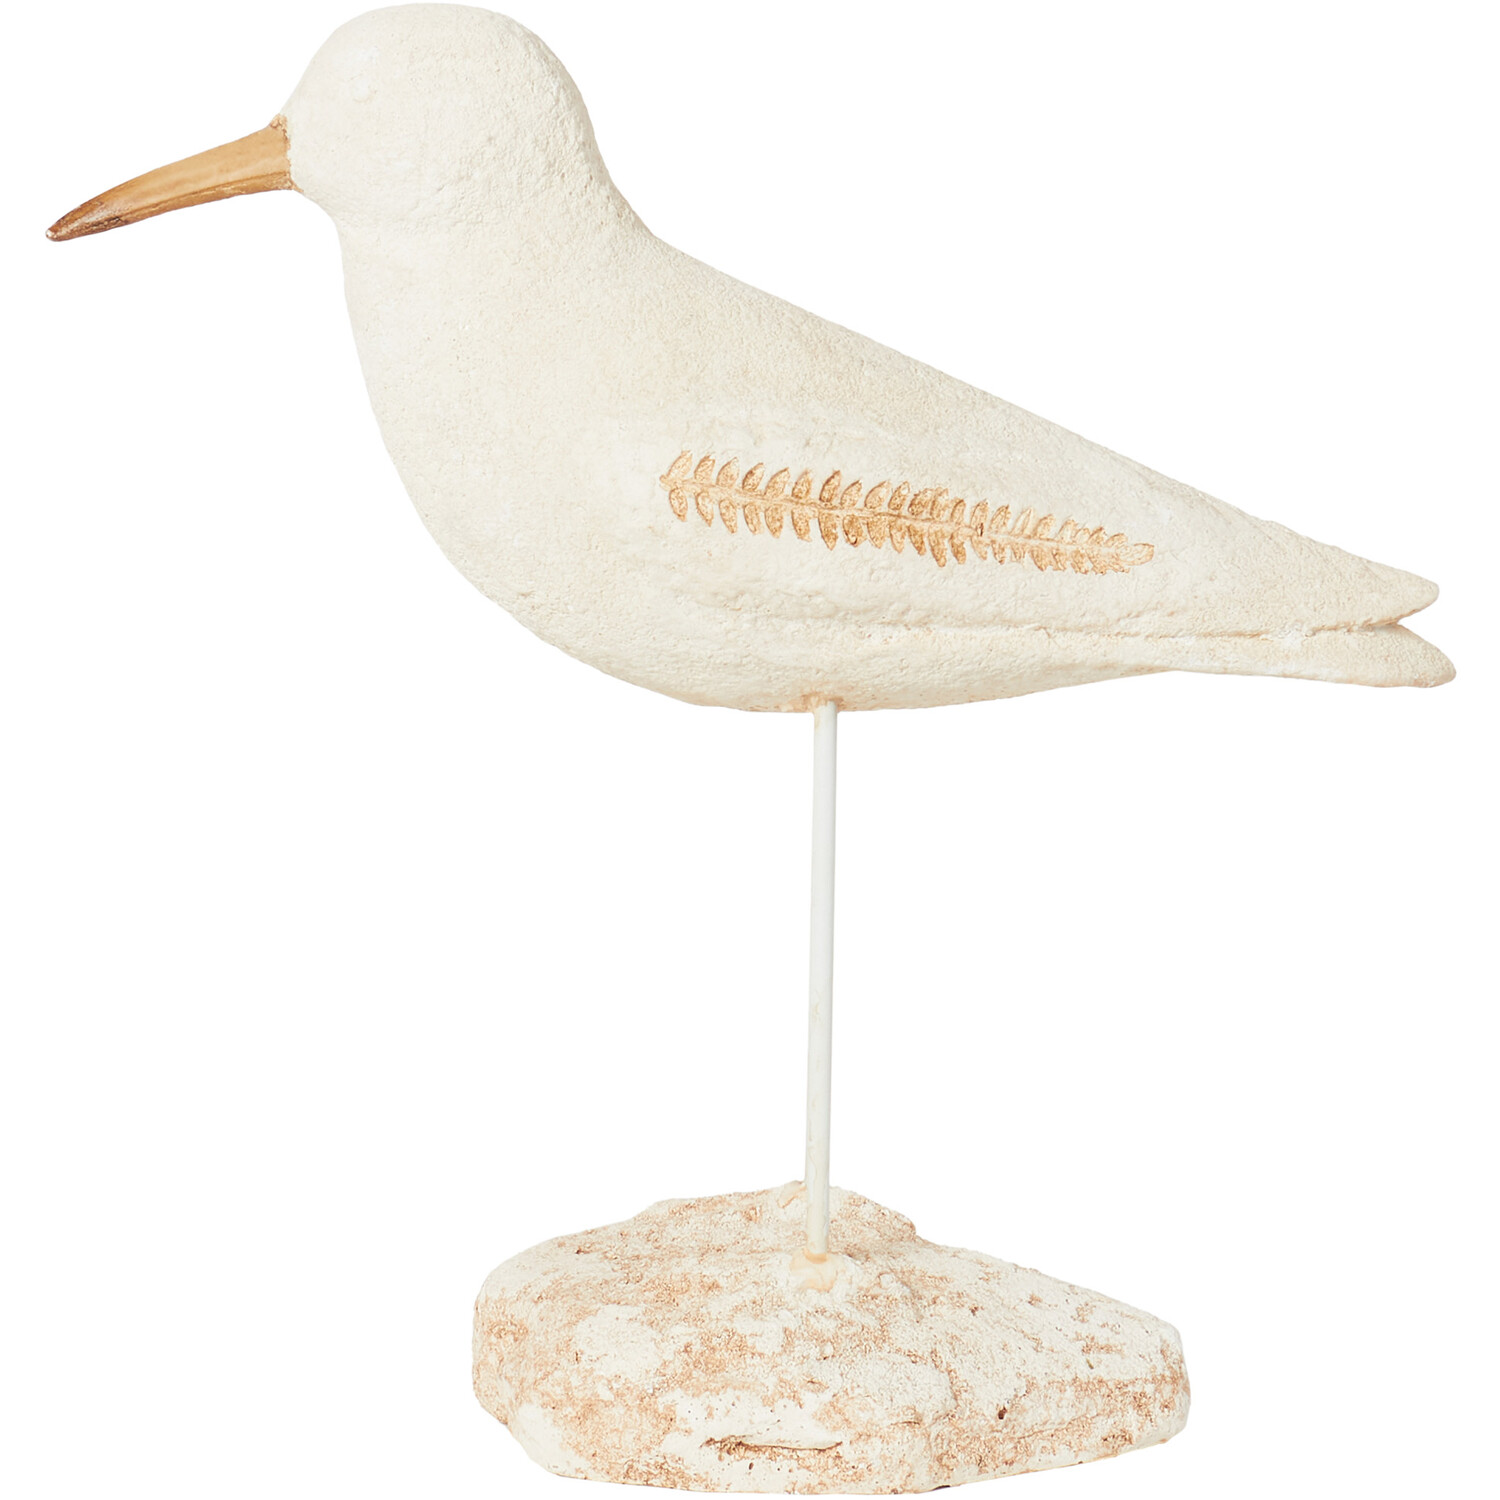 Seagull Ornament - White Image 1